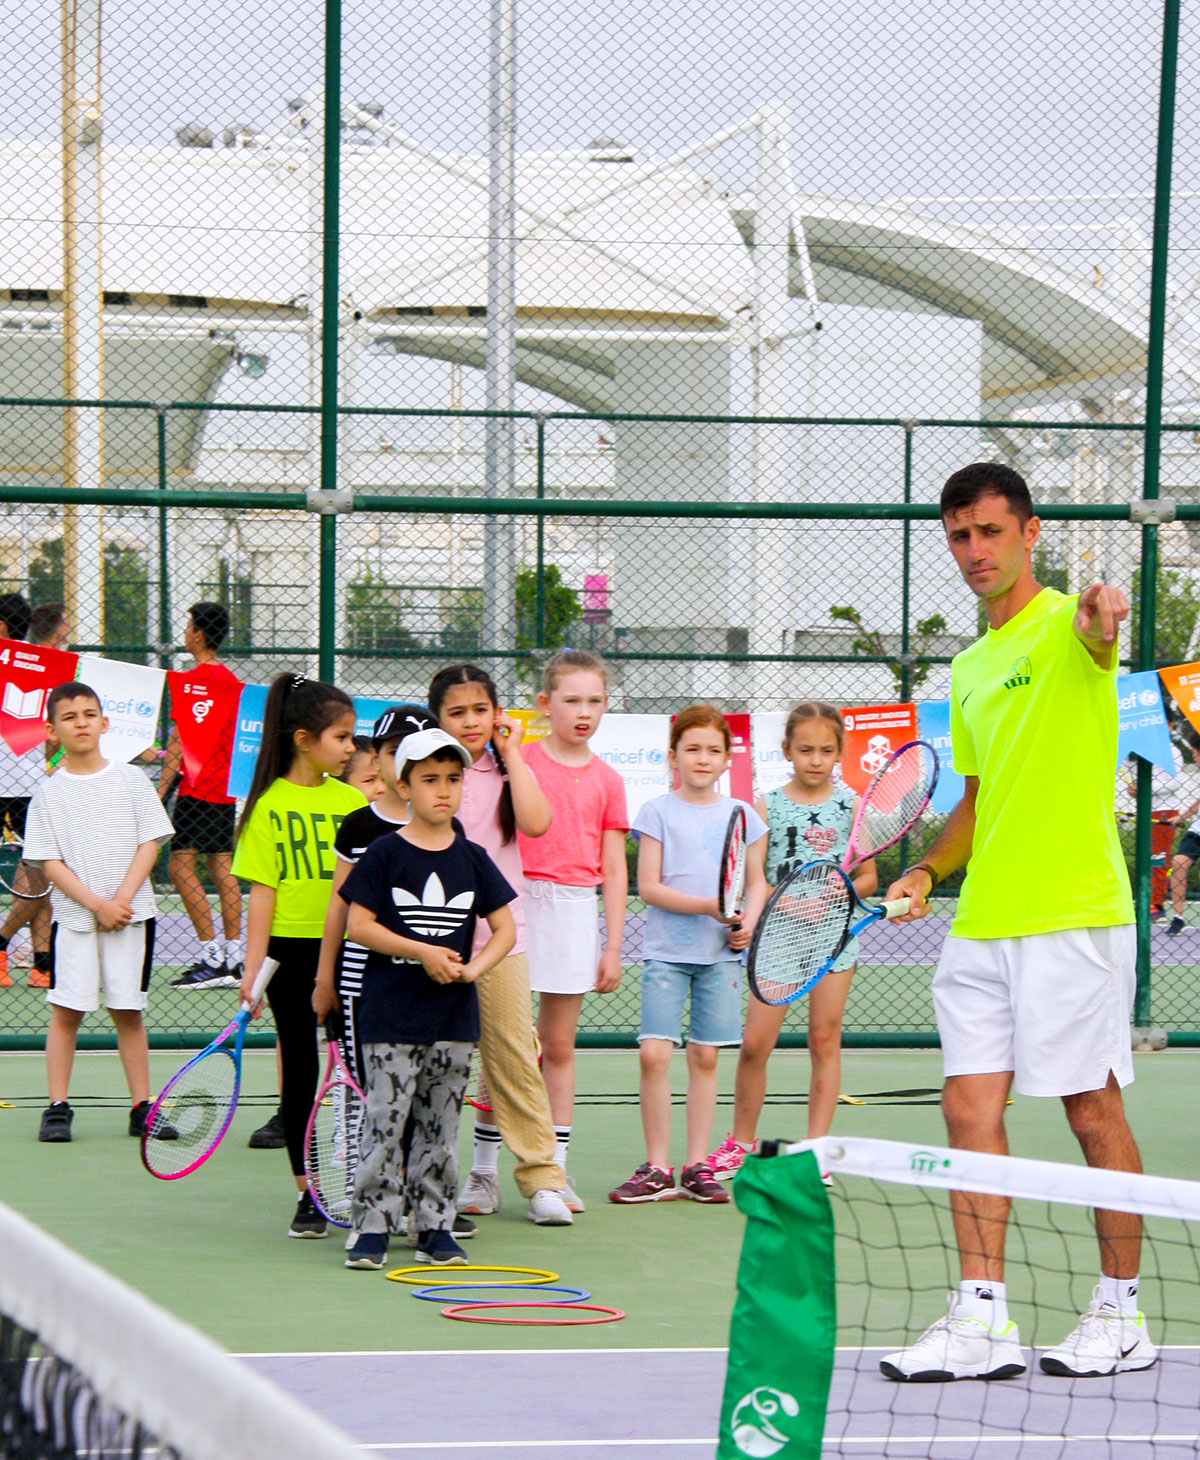 В Ашхабаде стартовал детский фестиваль по большому теннису